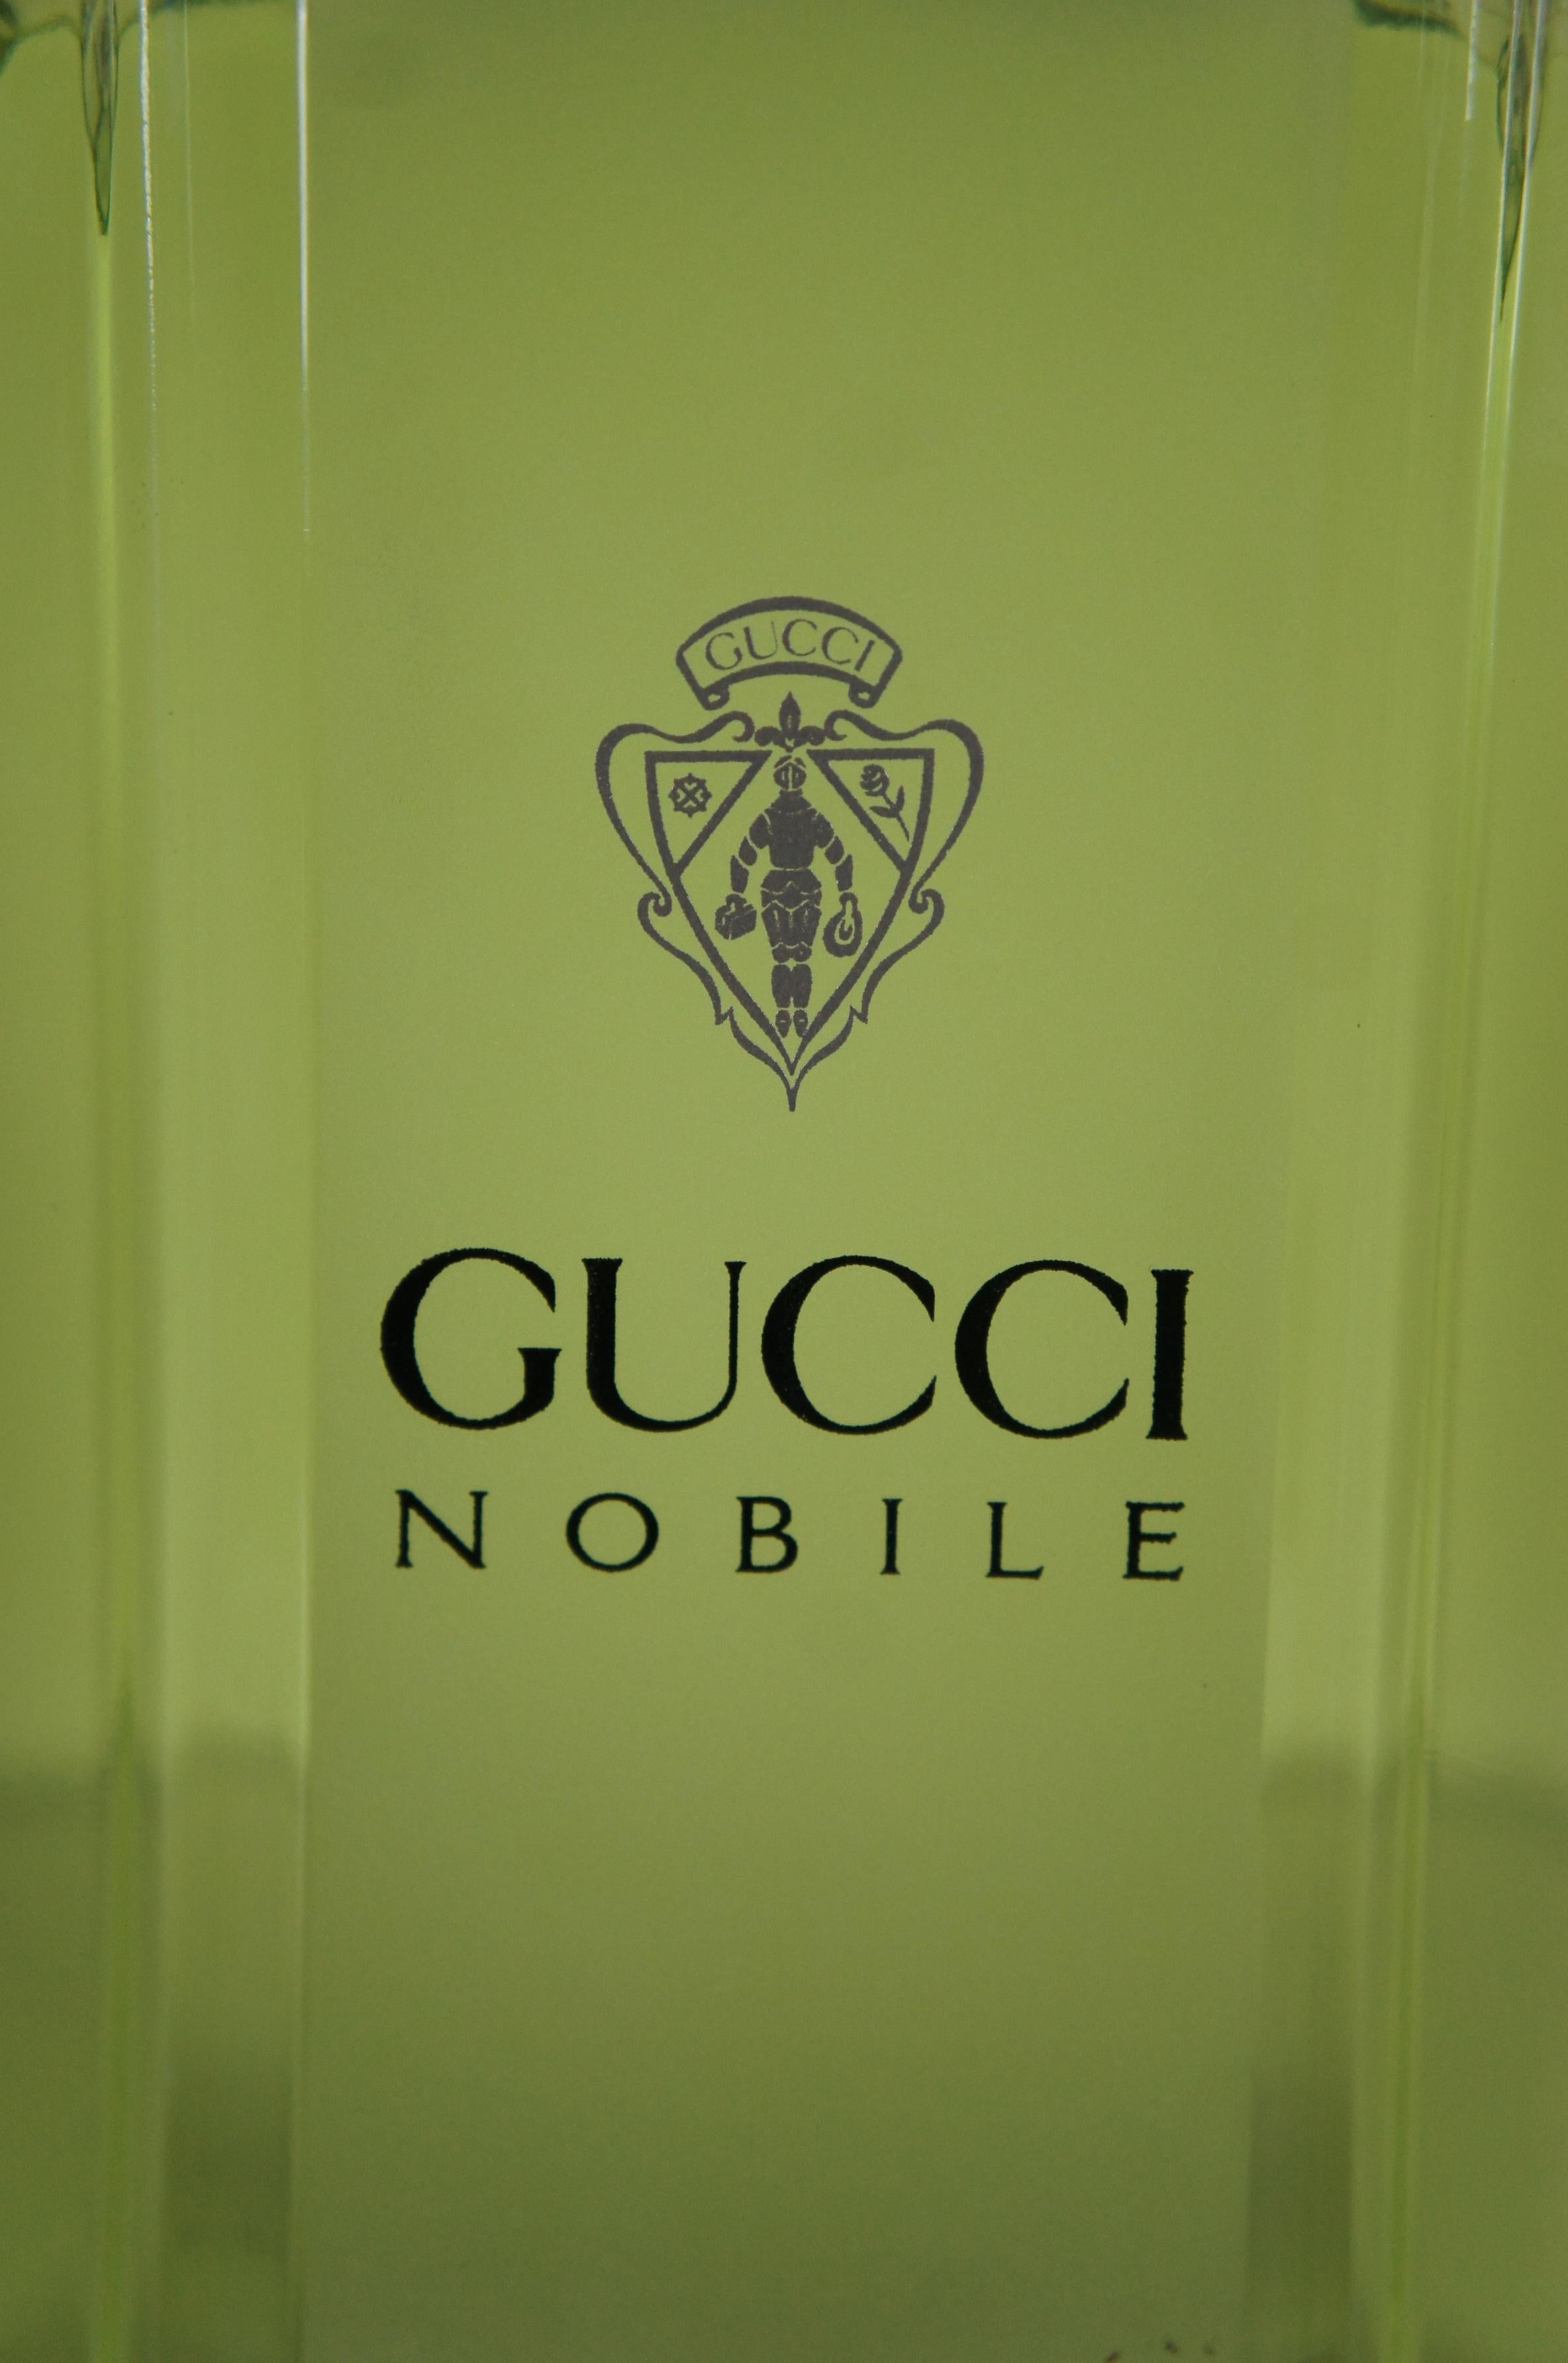 Gucci Nobile Eau Toilette Factice Dummy Cologne Parfümflasche Verkaufsraum Display im Angebot 6